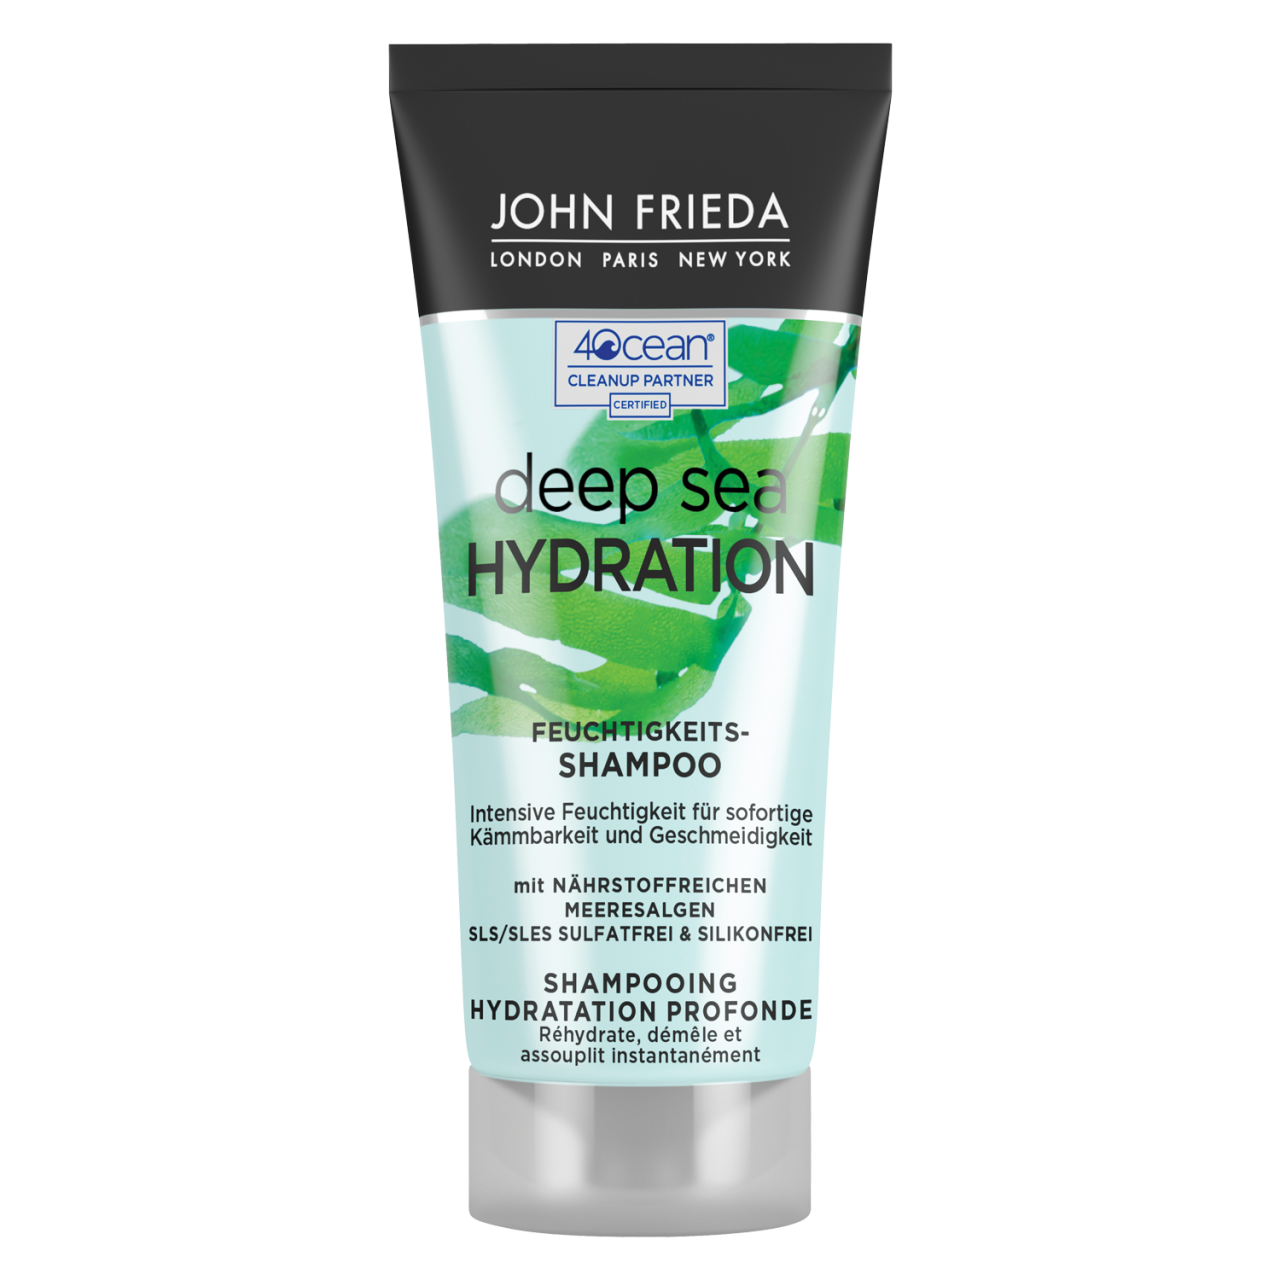 Deep Sea Hydration - Hydration Shampoo von John Frieda